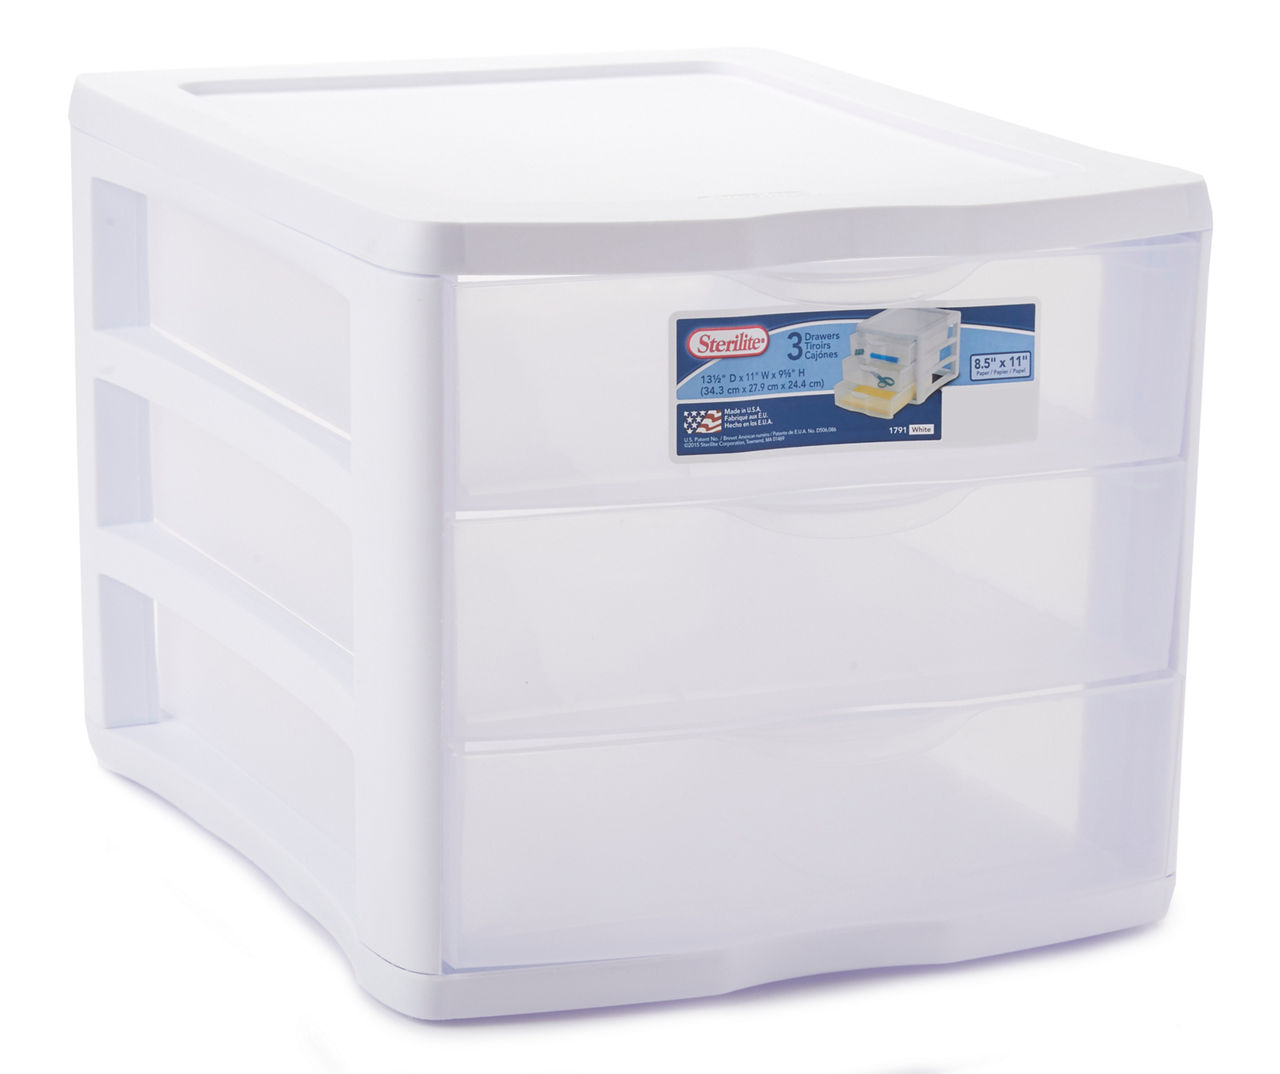 Sterilite White Clearview 3 Drawer Storage Unit - Shop Storage Bins at H-E-B